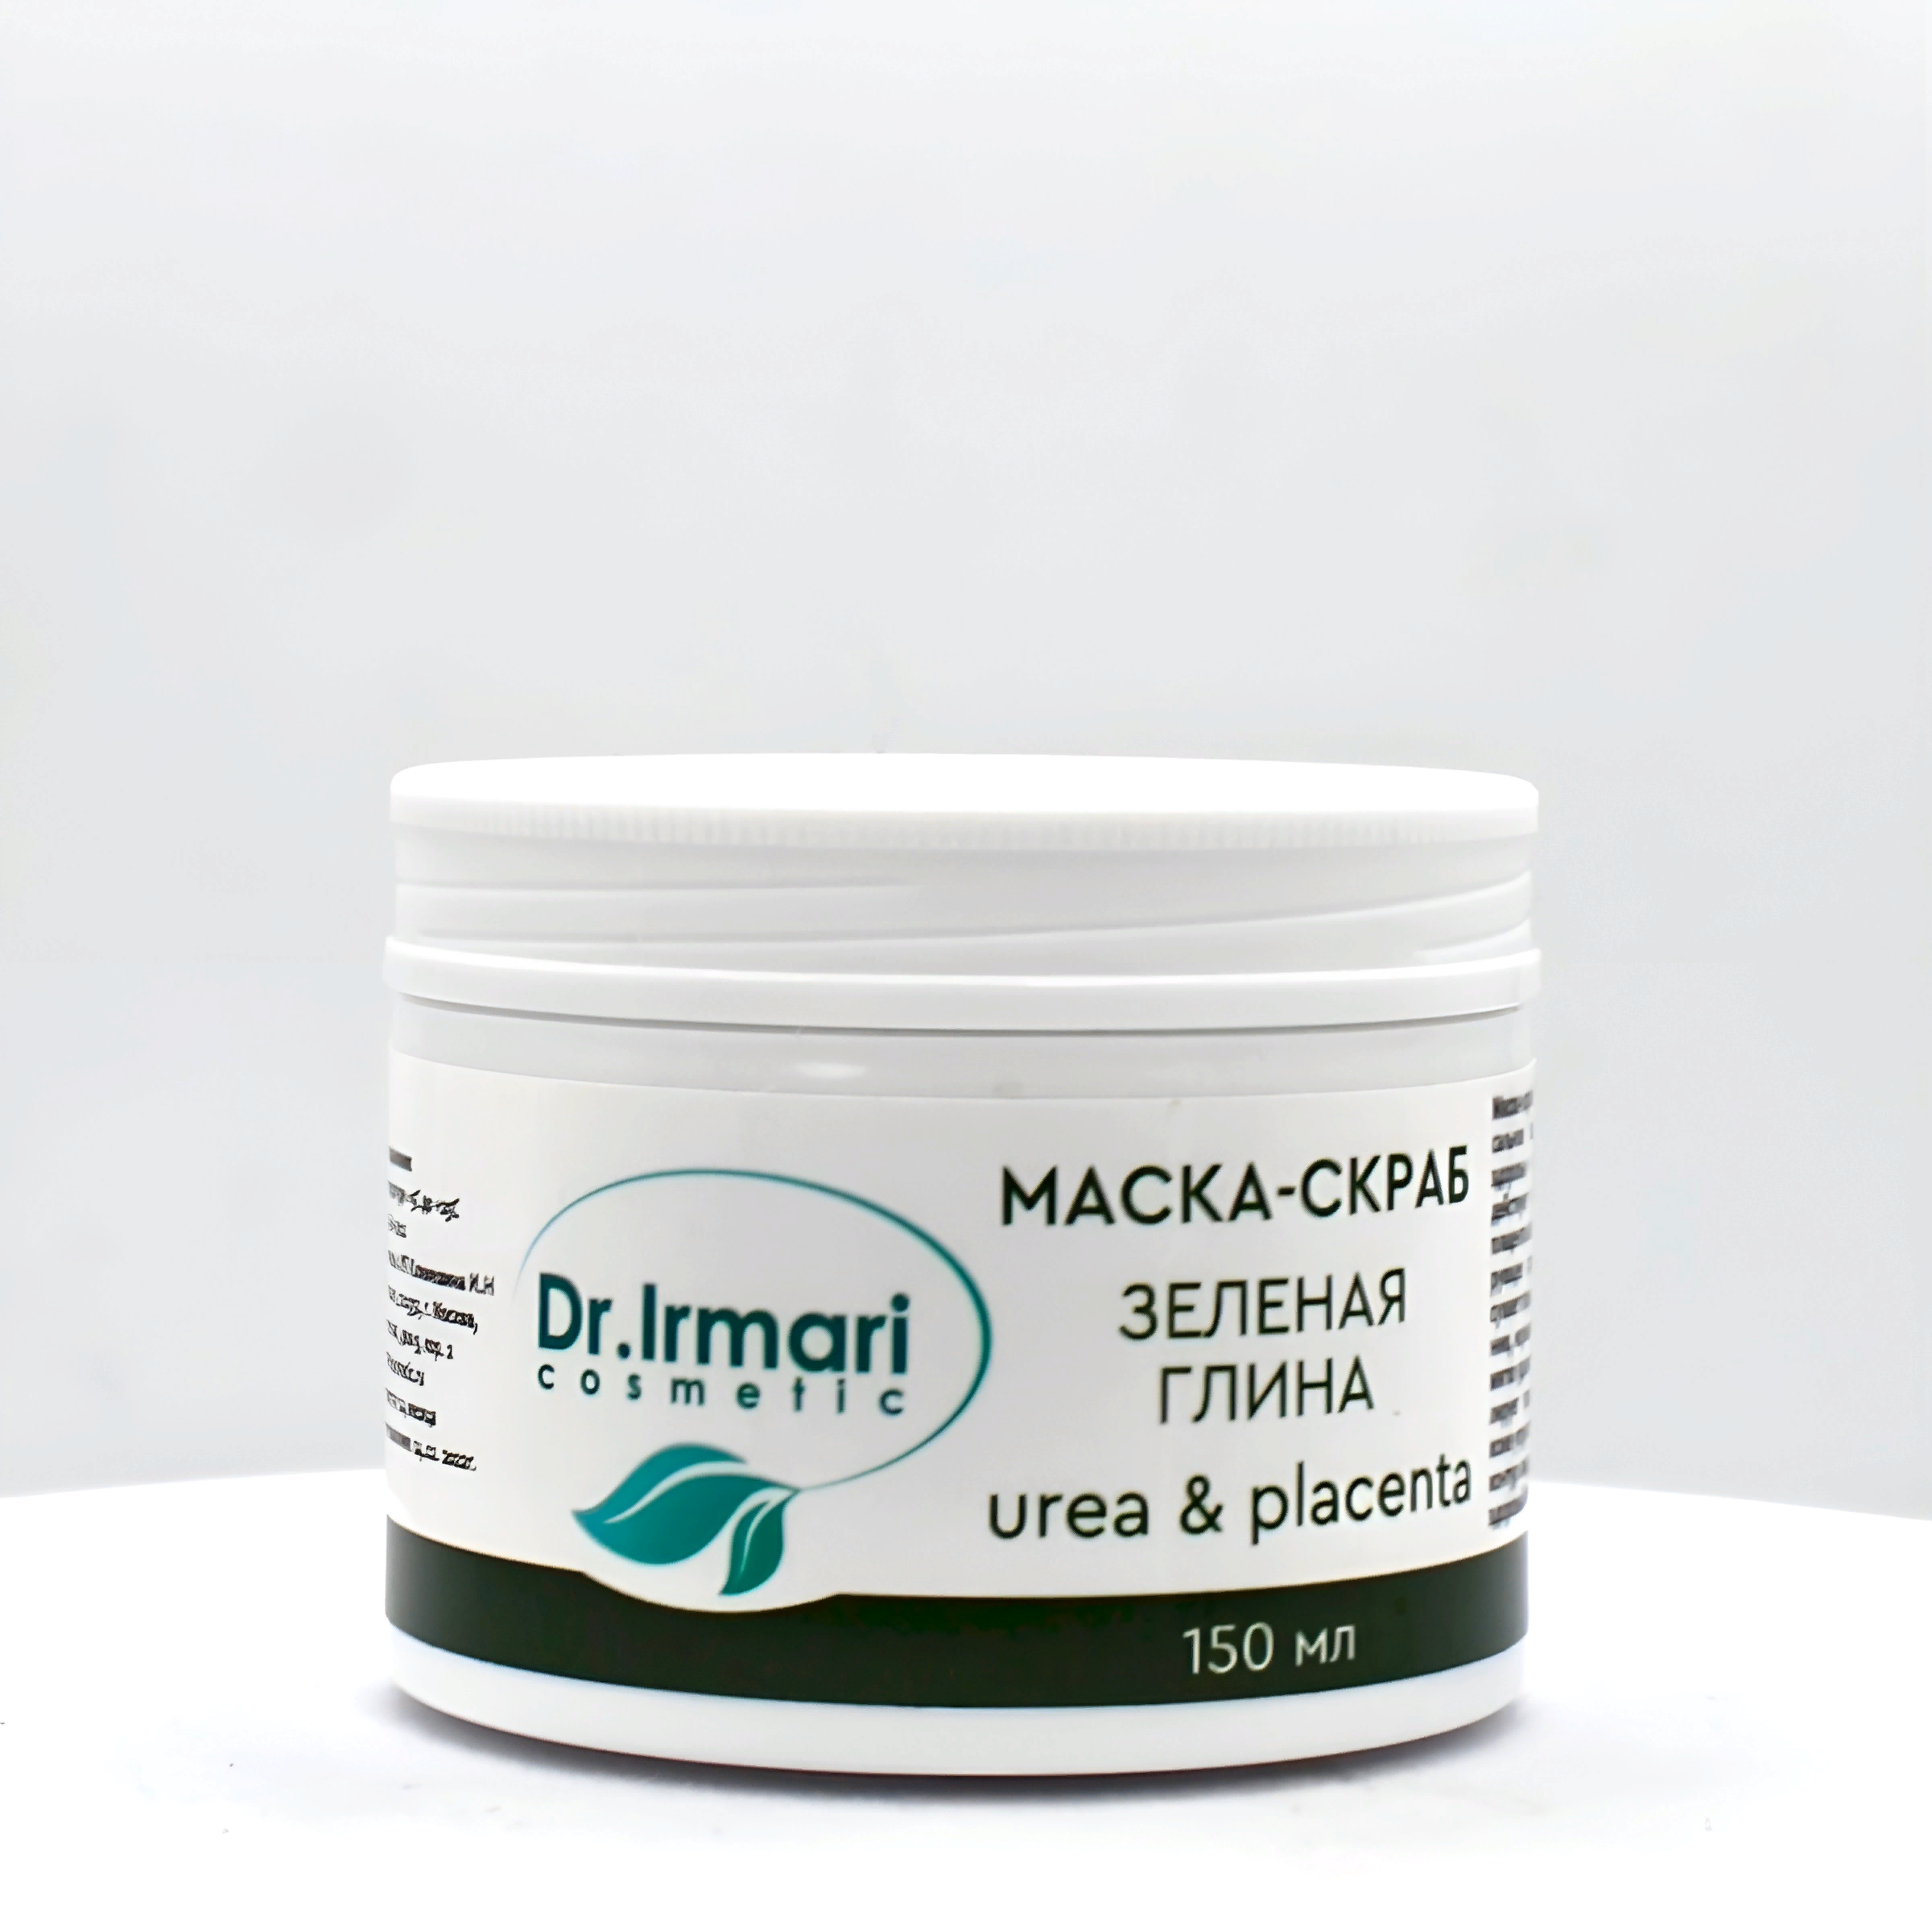 Маска-скраб Dr.Irmari cosmetic Urea & Placenta Зелёная глина 150 мл фотобаннер 250 × 200 см с фотопечатью люверсы шаг 1 м зелёная стена